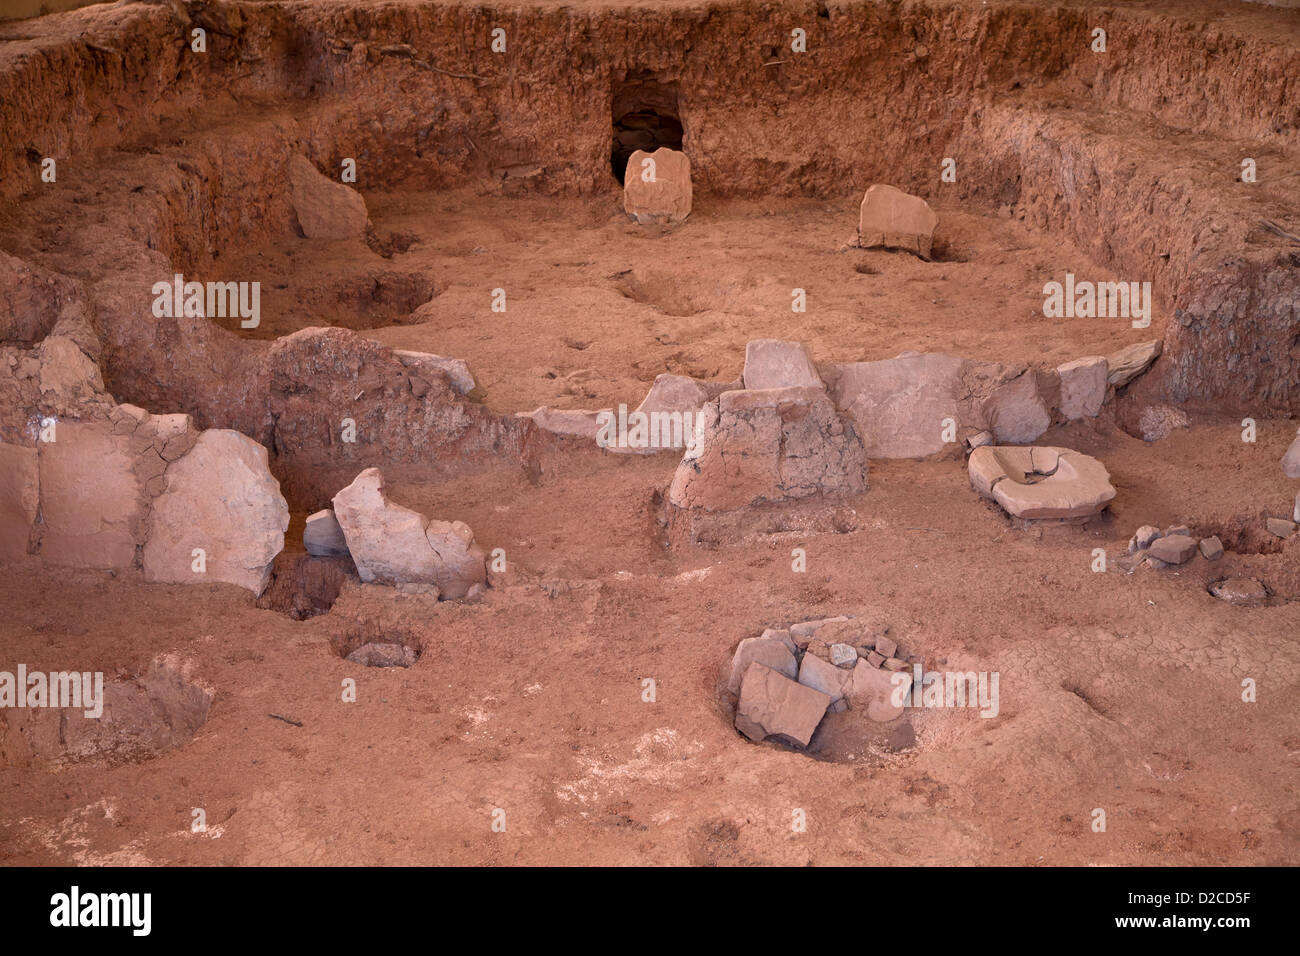 Le rovine di una kiva, stanza usata per i rituali religiosi di pre-colombiana indiani Anasazi, Mesa Verde National Park in Colorado, STATI UNITI D'AMERICA Foto Stock